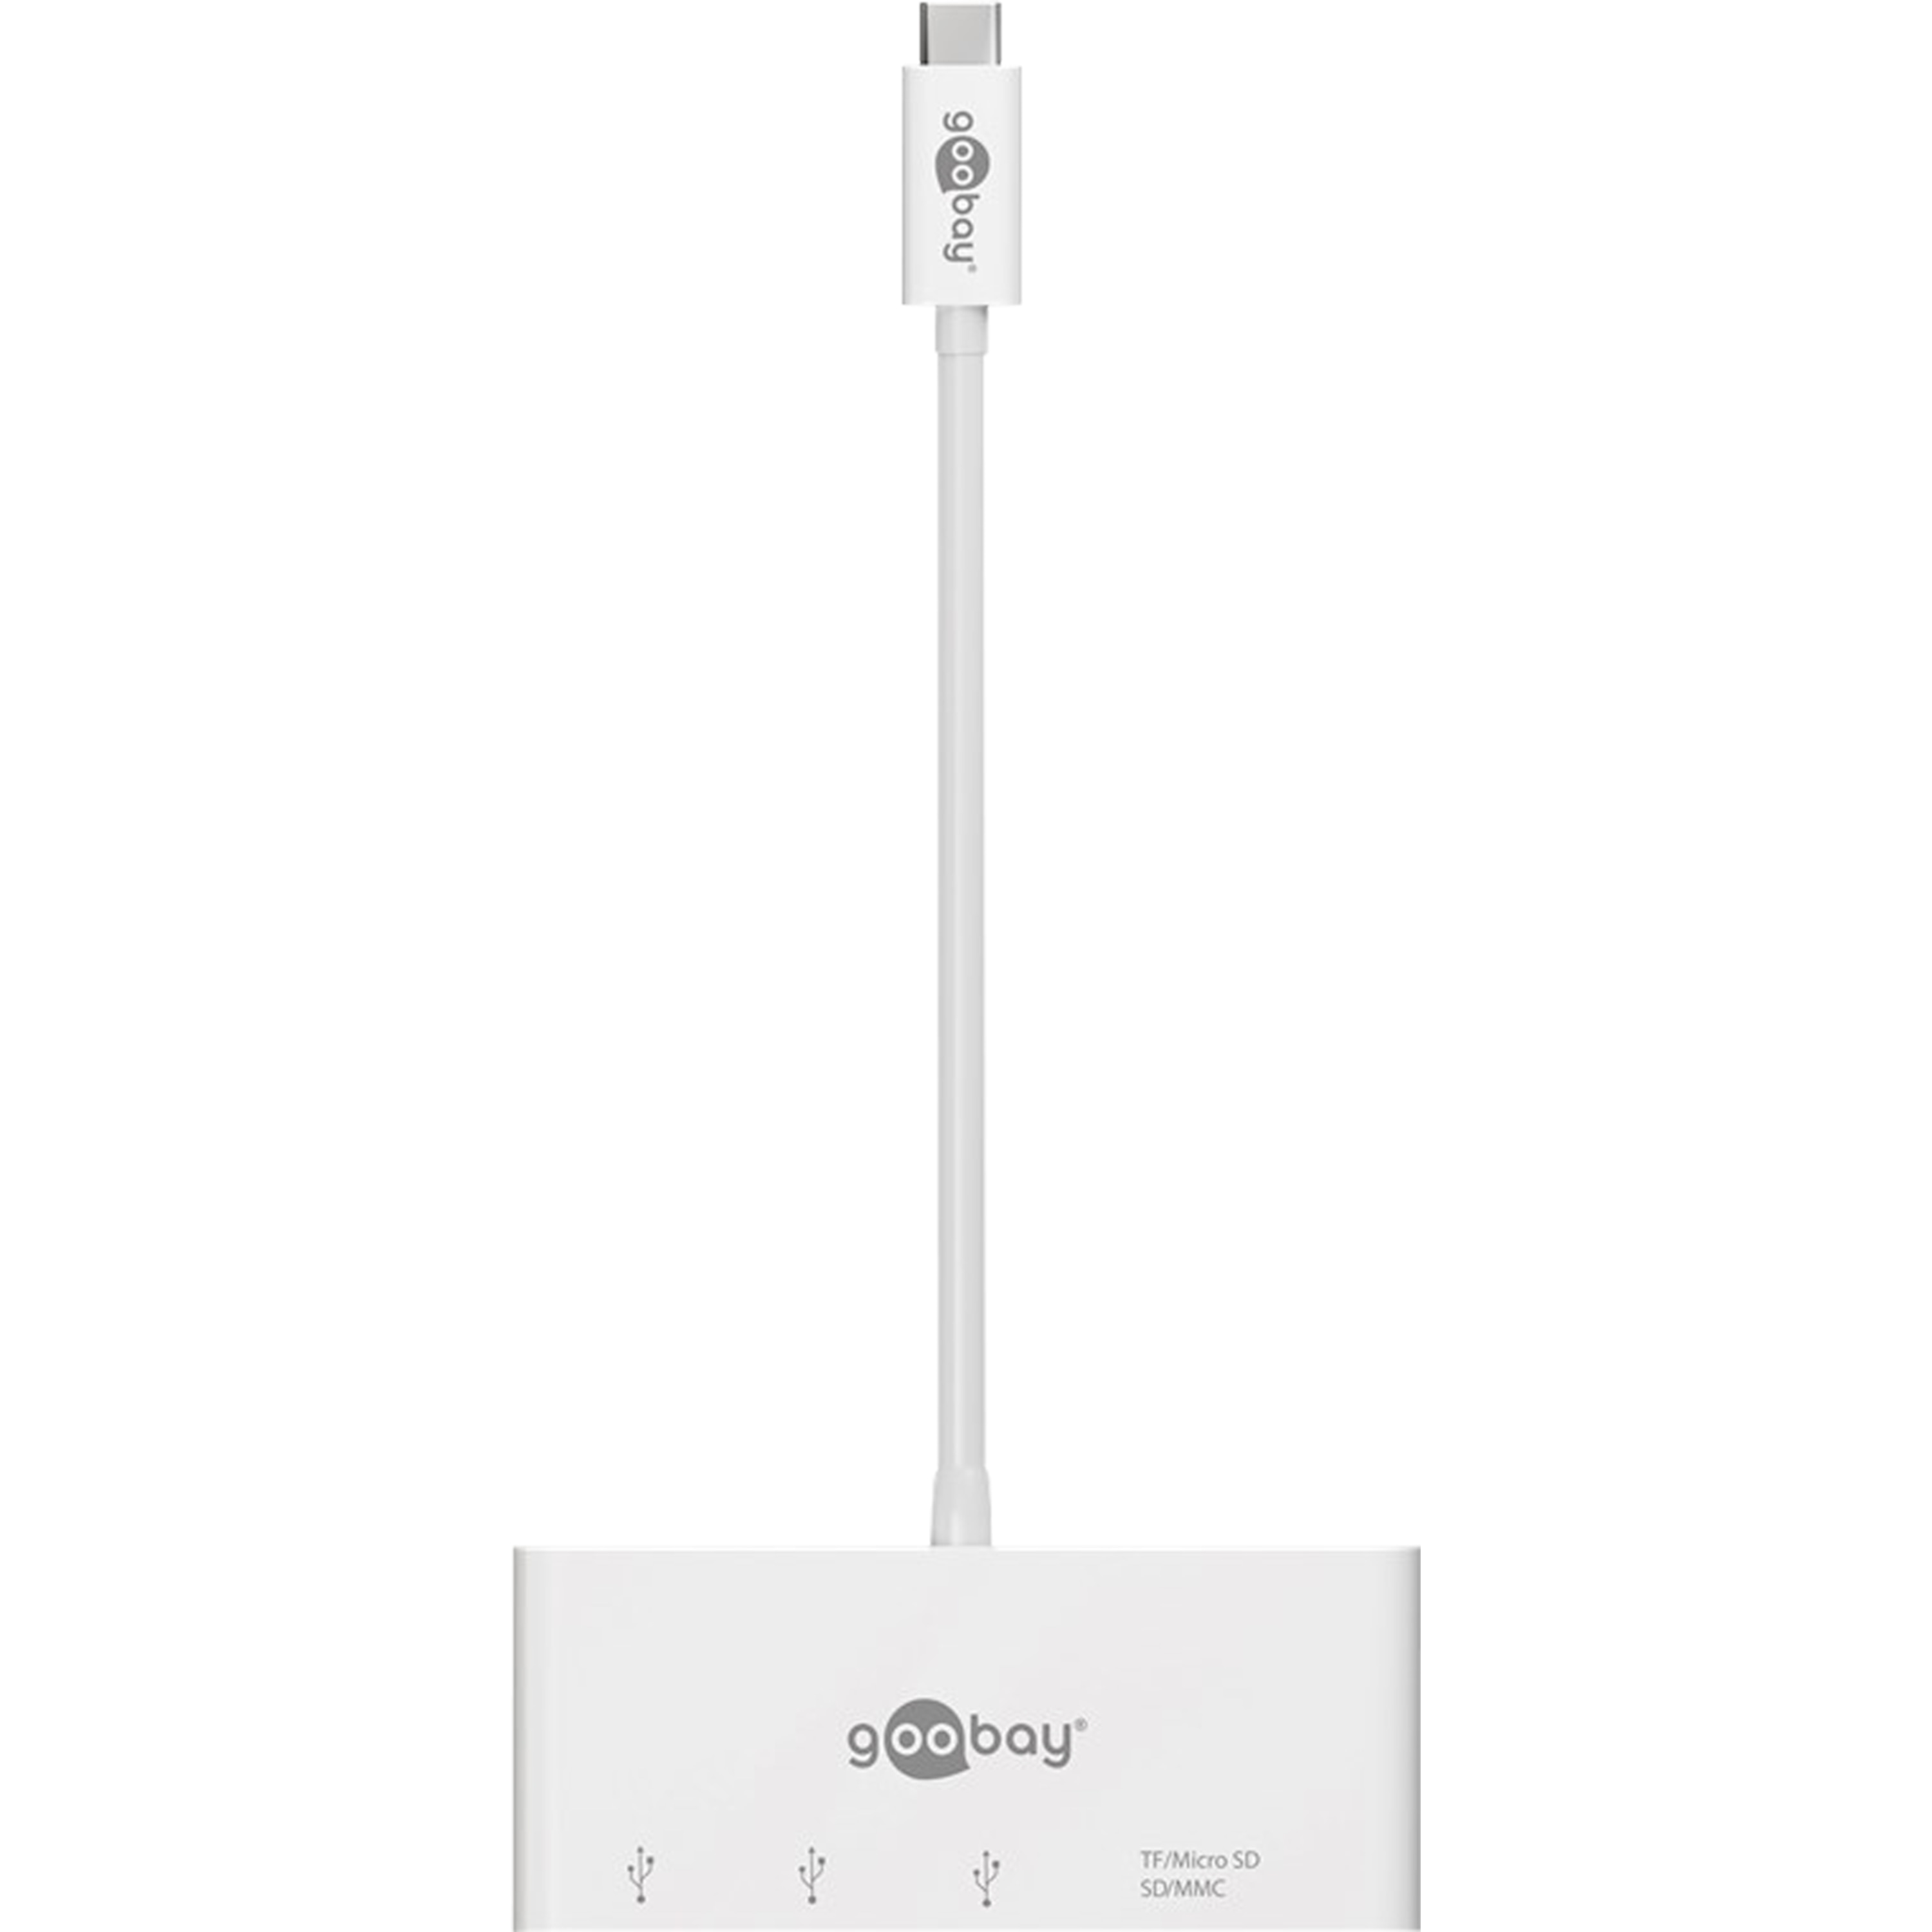 GOOBAY USB-C™ Multiport Adapter CardReader, erweitert ein USB-C™ Gerät um drei USB 3.0 Anschlüsse sowie einen Kartenschacht für SD/MMC- und Micro SD-Karten